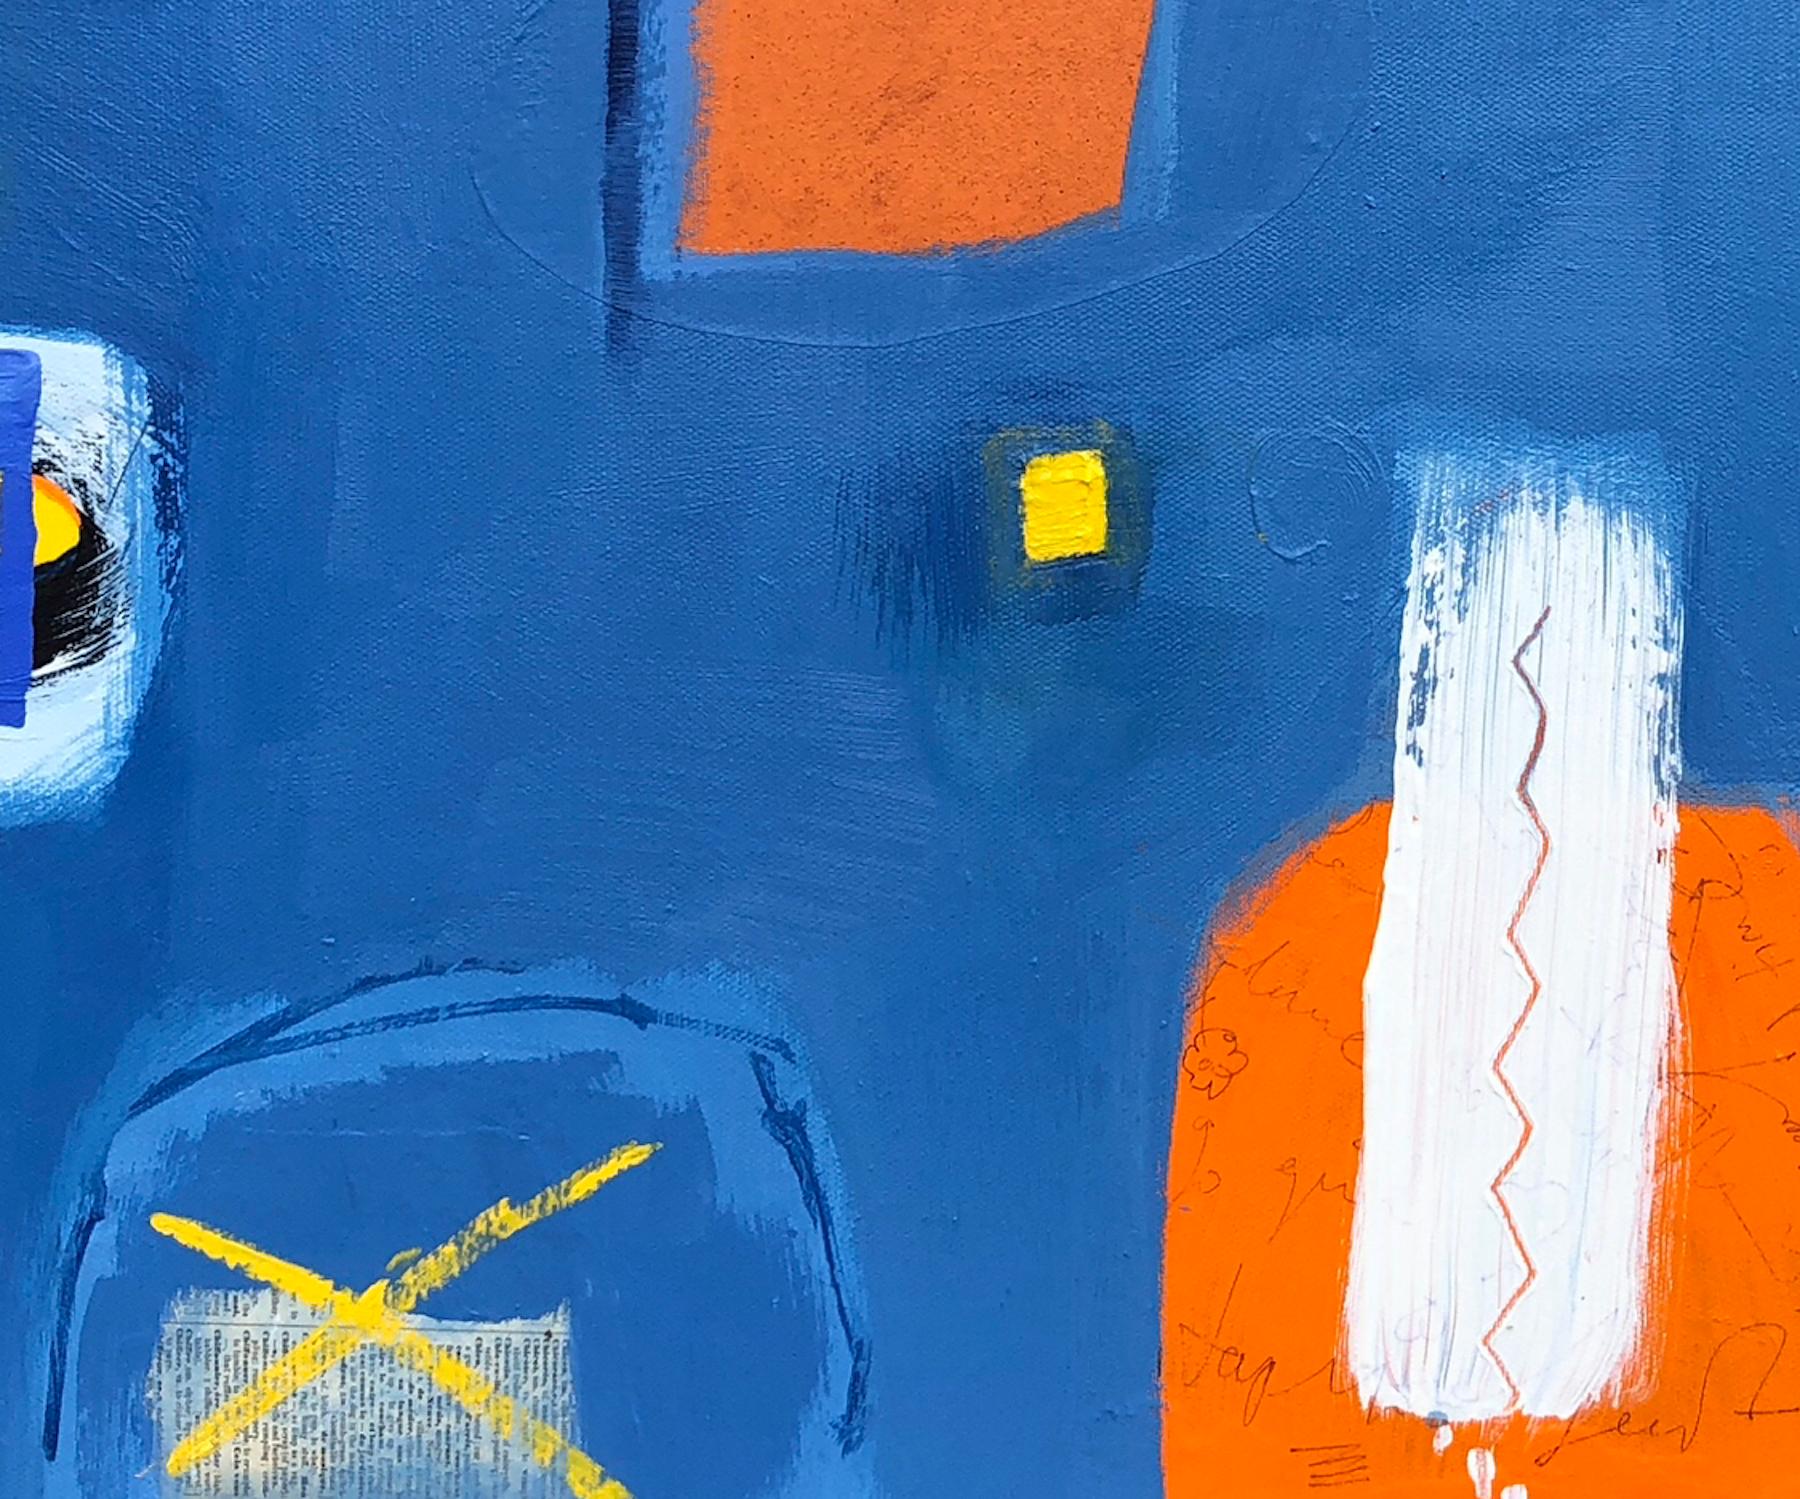 Die Inspiration und die Ideen für dieses Werk stammen aus einem Traum, in dem ein orangefarbenes Quadratmotiv vorkam. Die Blautöne sind eine Mischung aus Preußischblau, Ultramarin und Cerulean. Das Werk besteht aus Acryl auf Leinwand, mit Bereichen